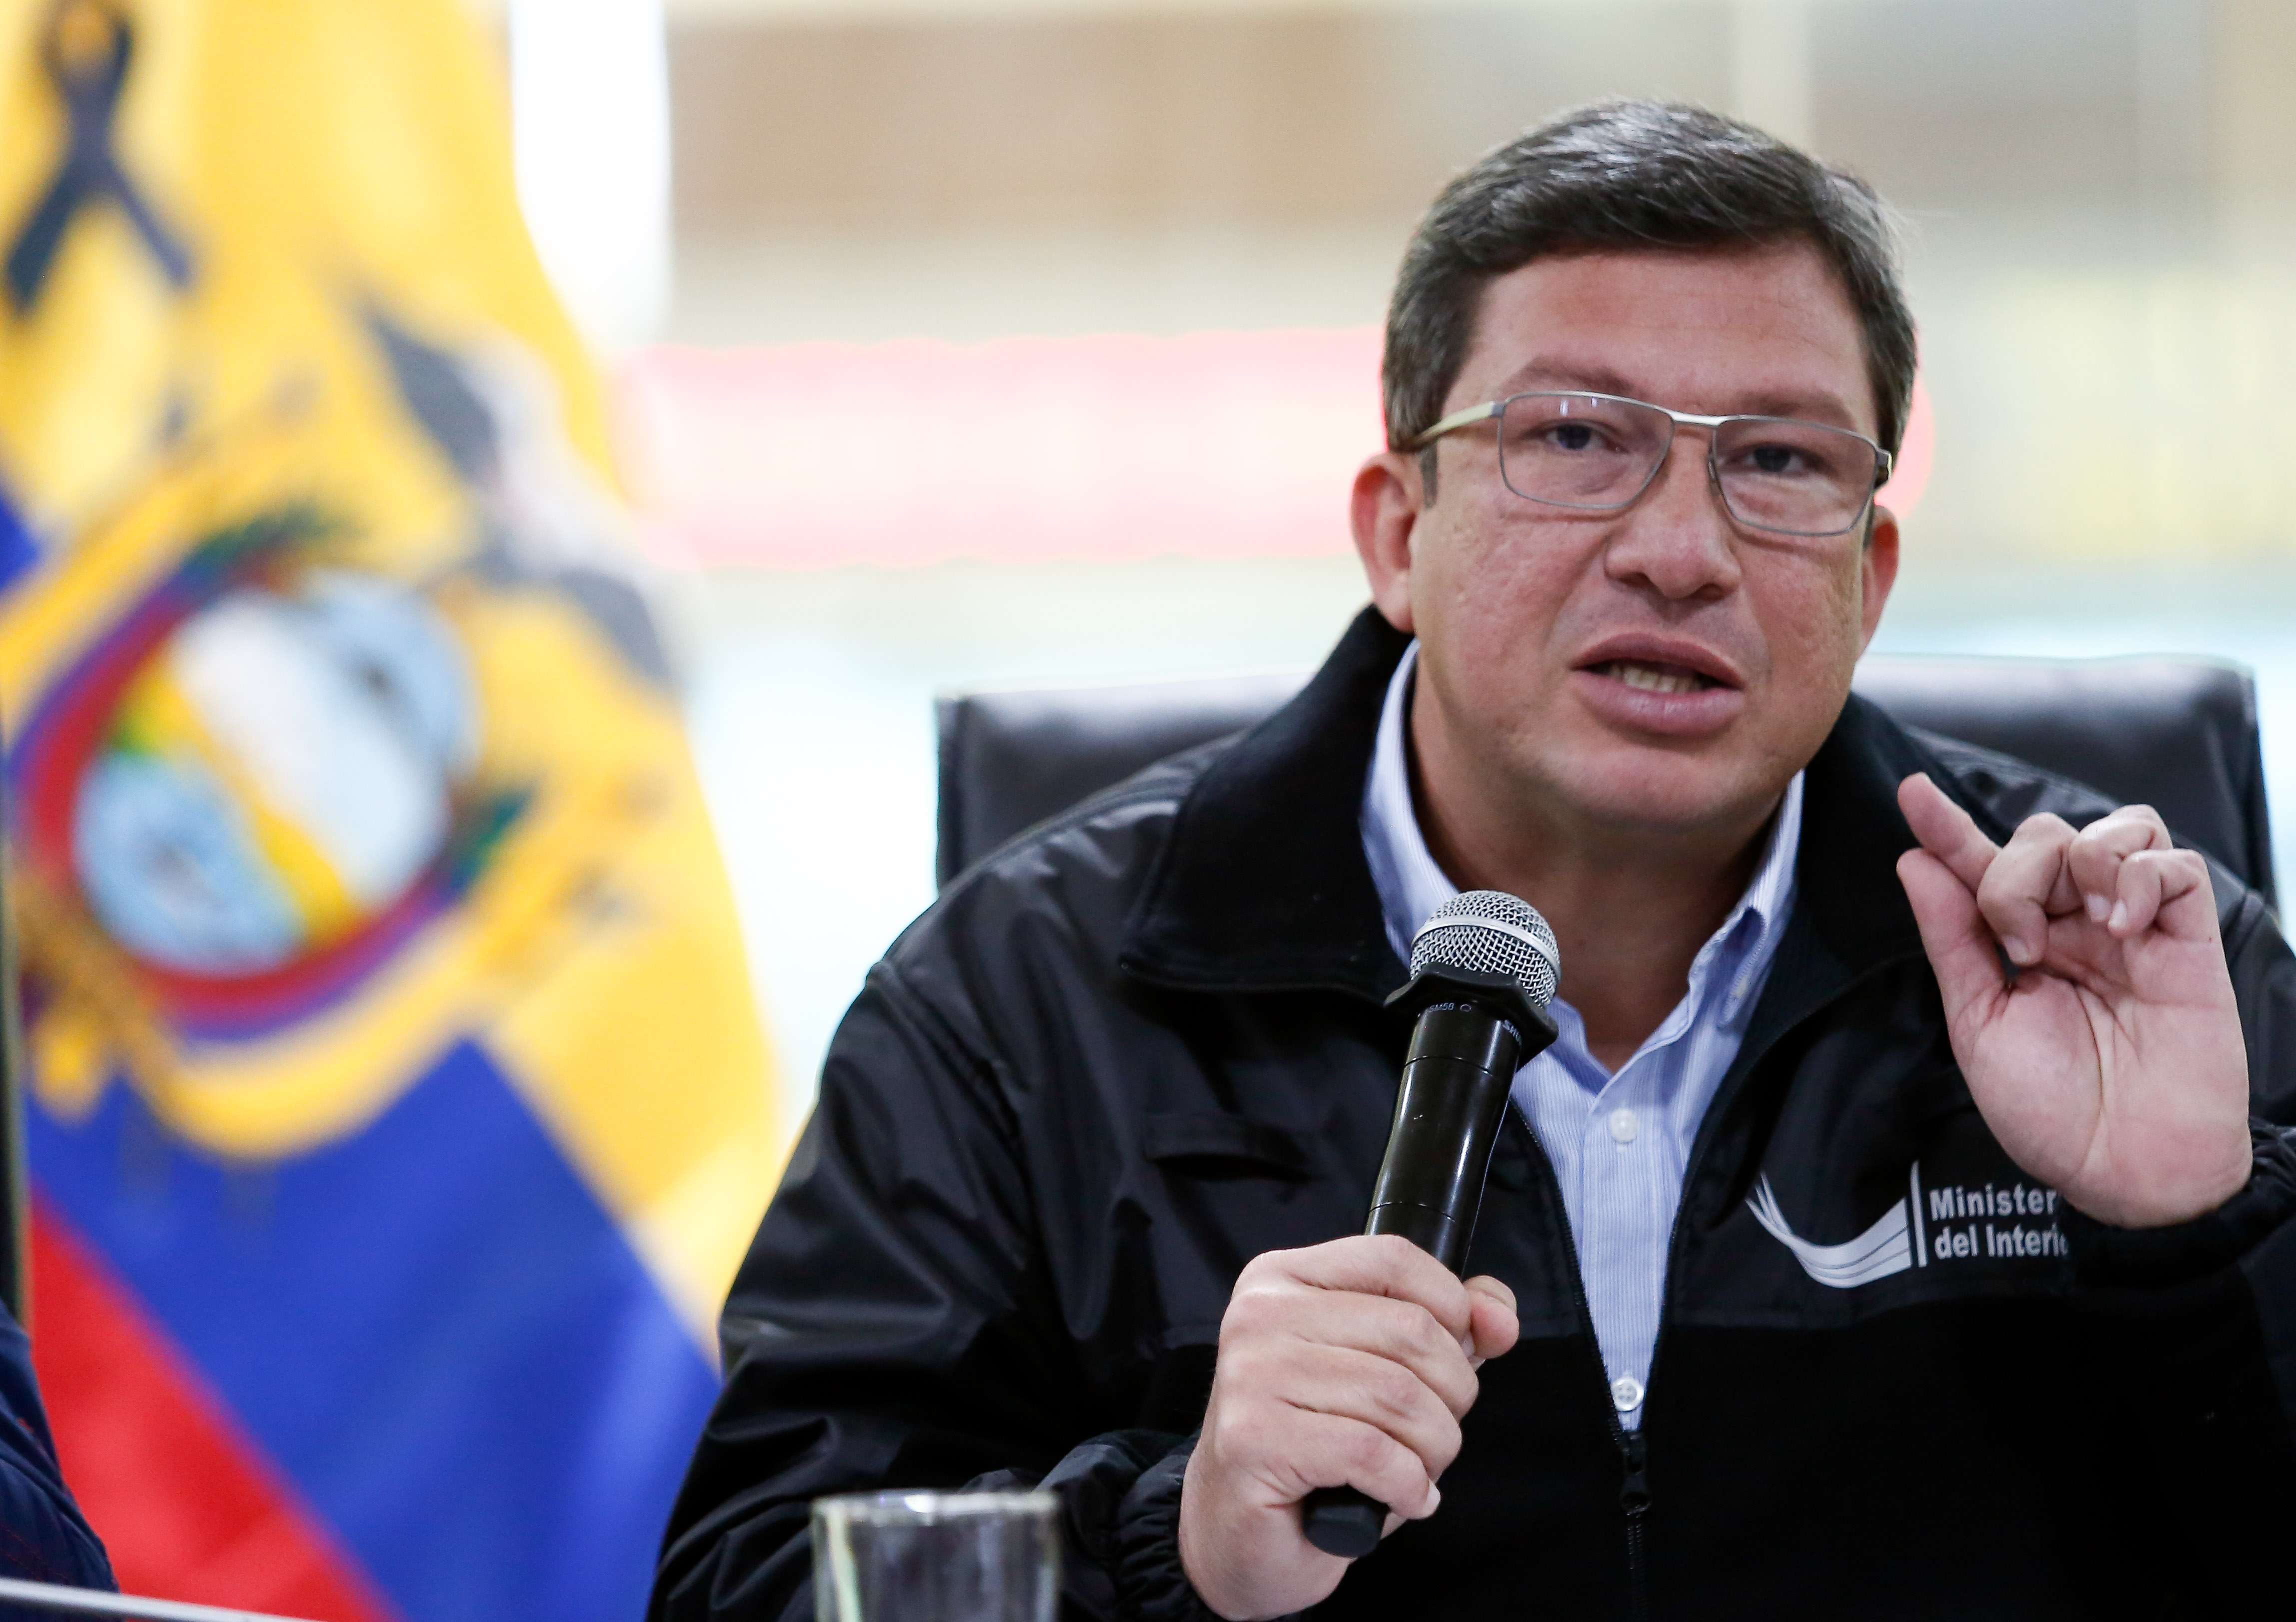 El ministro de interior ecuatoriano presentó prueba de vida de dos personas secuestradas por 